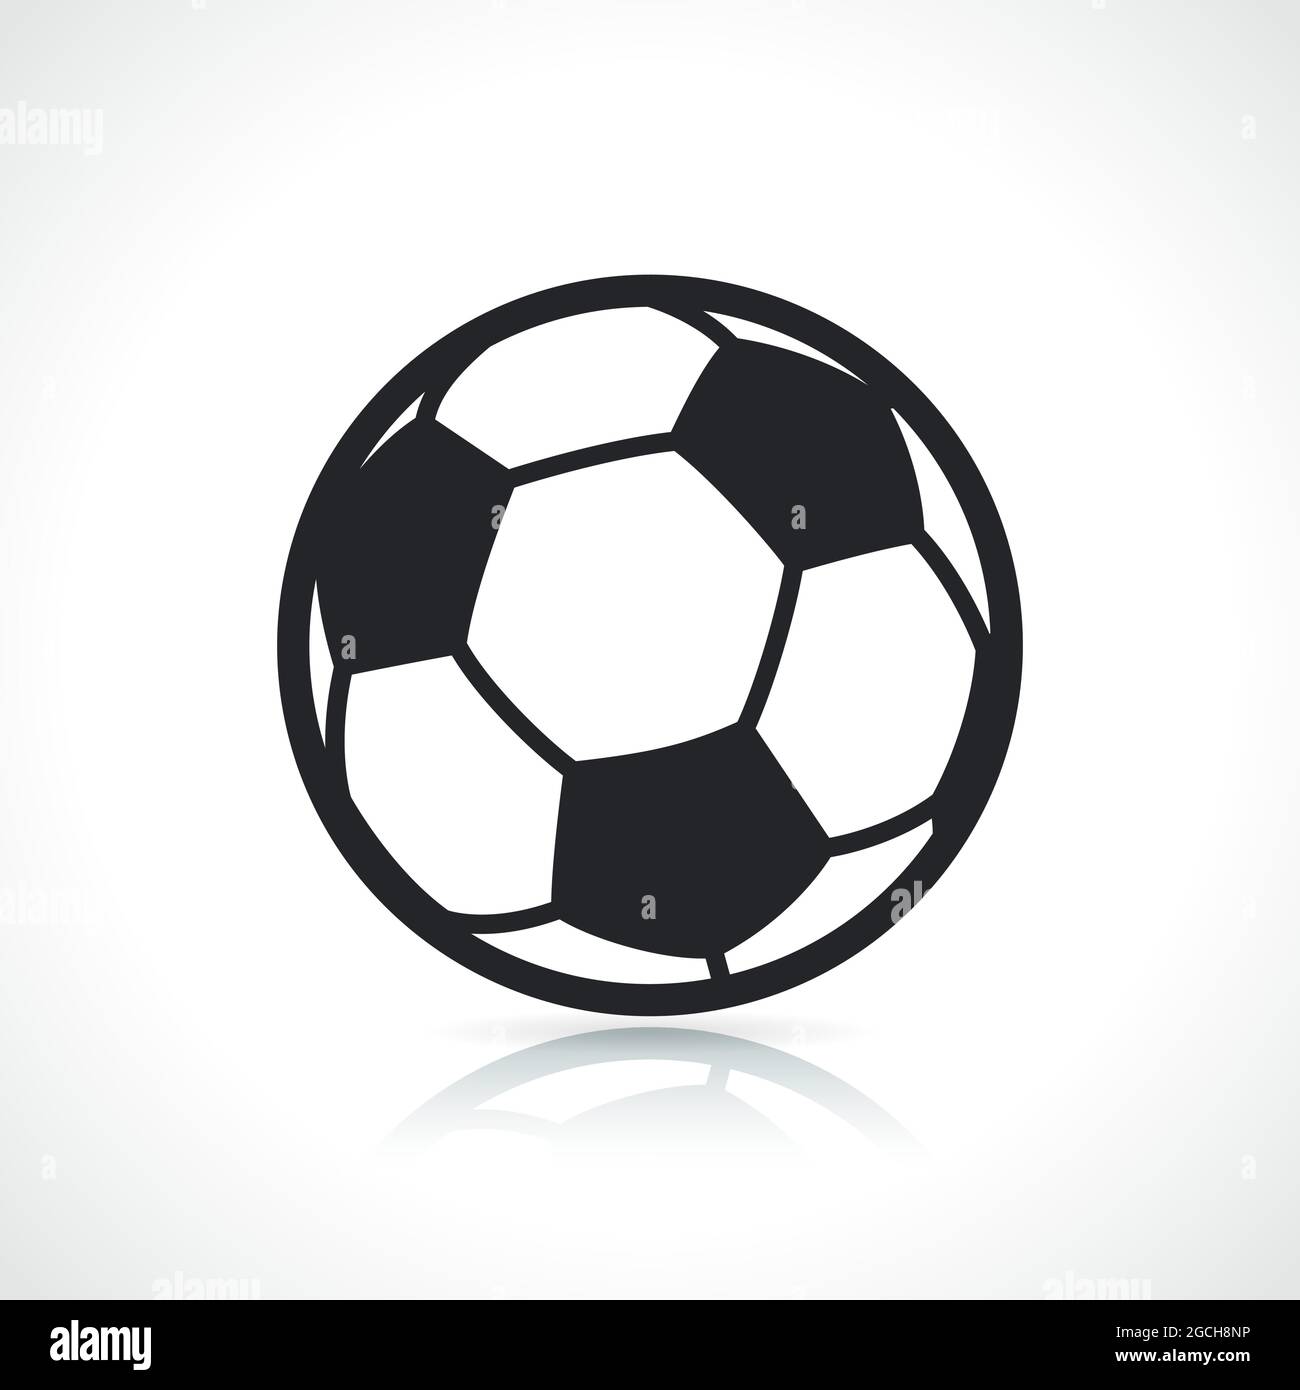 Isoliertes Design mit Fußball- oder Fußballsymbol Stock Vektor